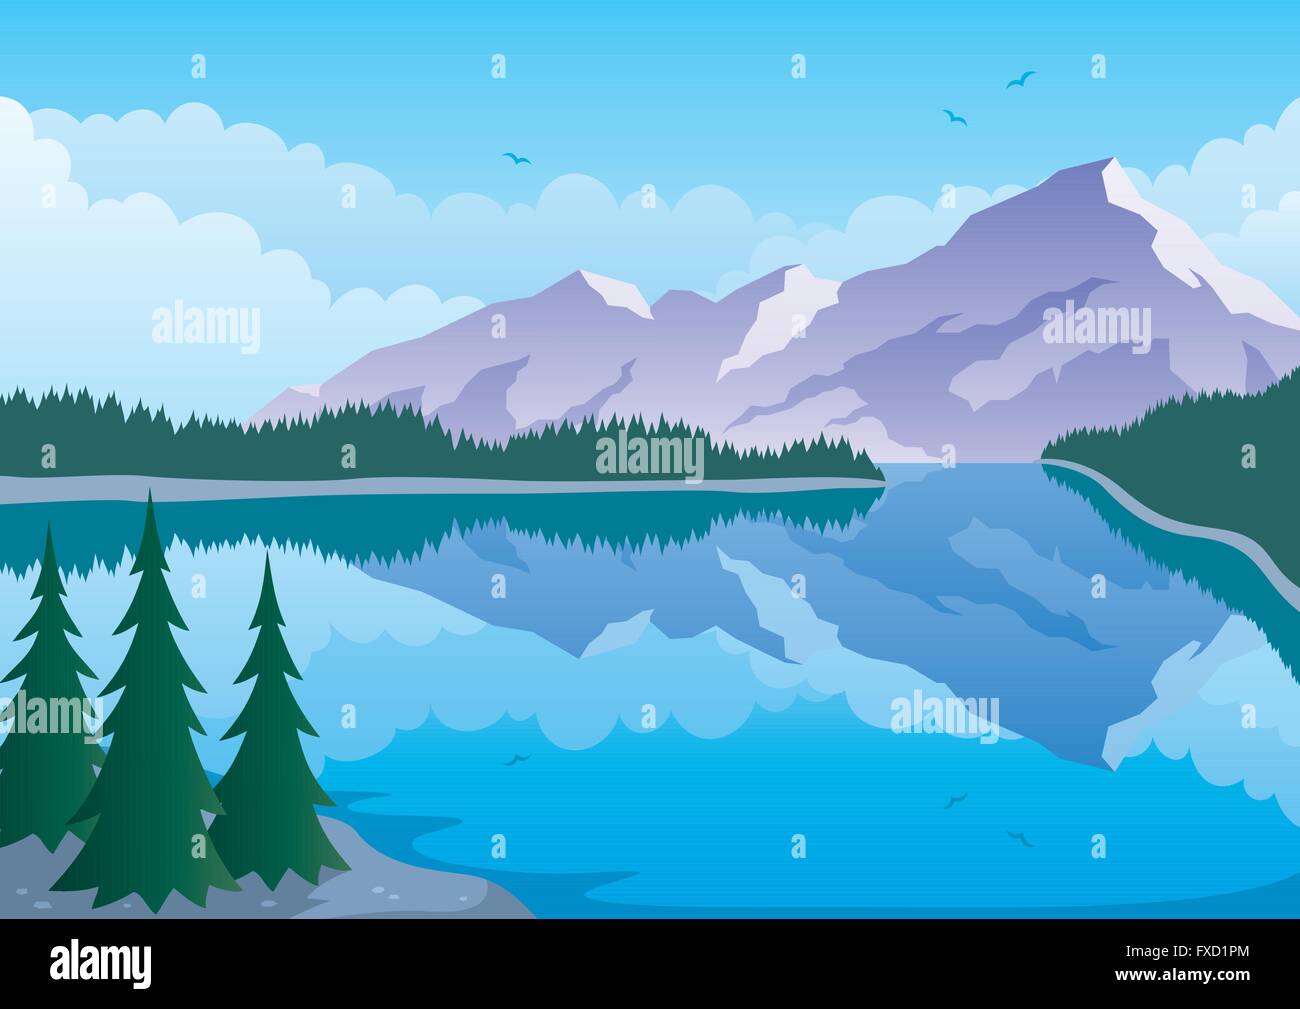 Illustrierte Landschaft von Berg und See. Stock Vektor